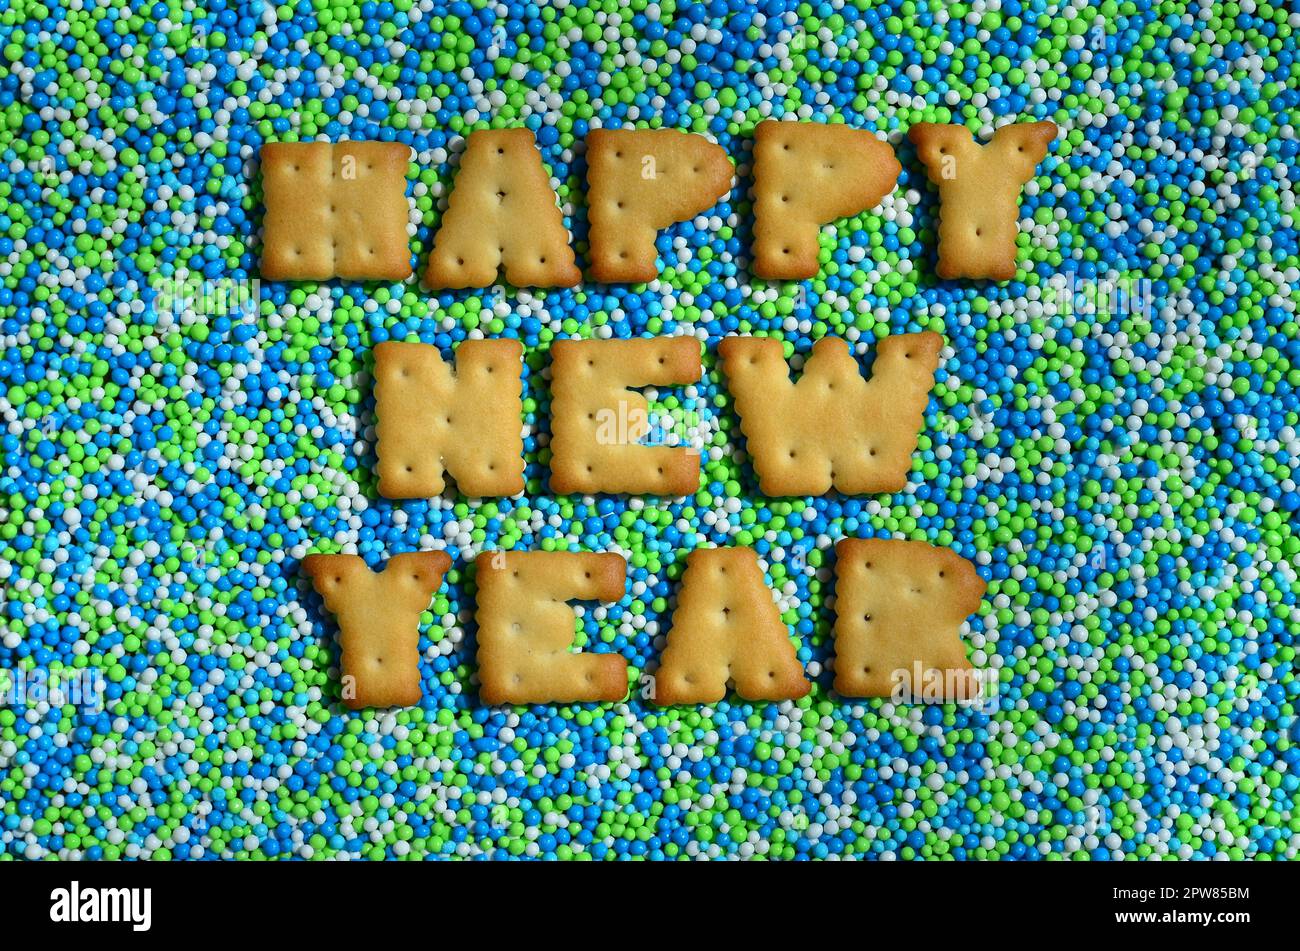 Felice anno nuovo. La parola dalle lettere commestibili del cracker si trova sulla polvere smaltata. Un enorme numero di dolci, colorate perle di dimensioni molto piccole per il deco Foto Stock